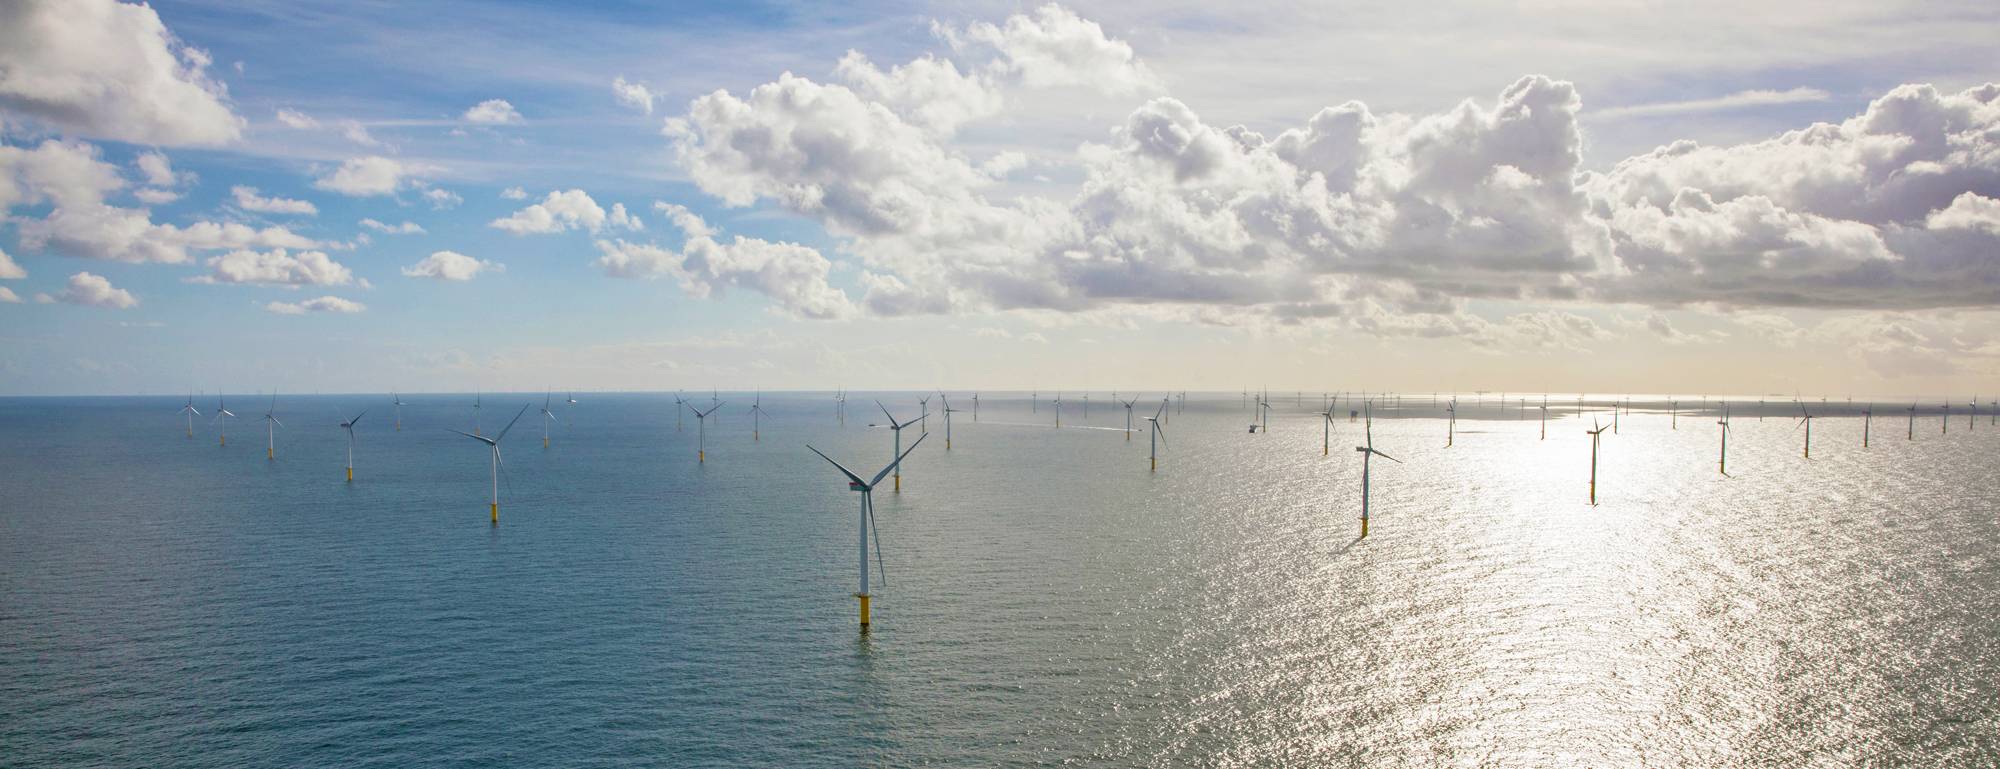 Gemini Wind Farm in the North Sea